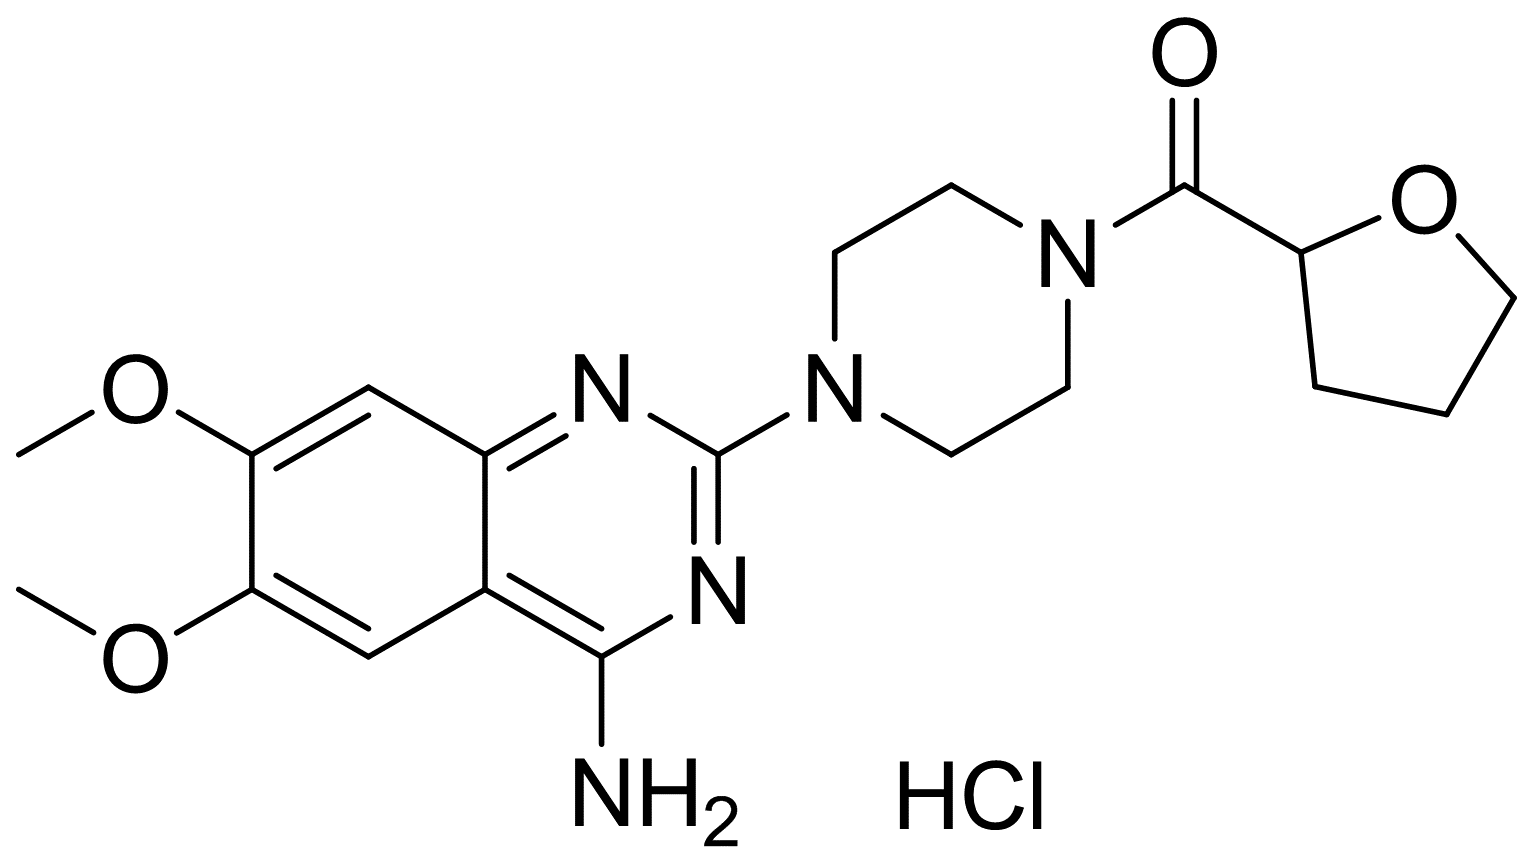 盐酸特拉唑嗪，化学对照品(100mg)